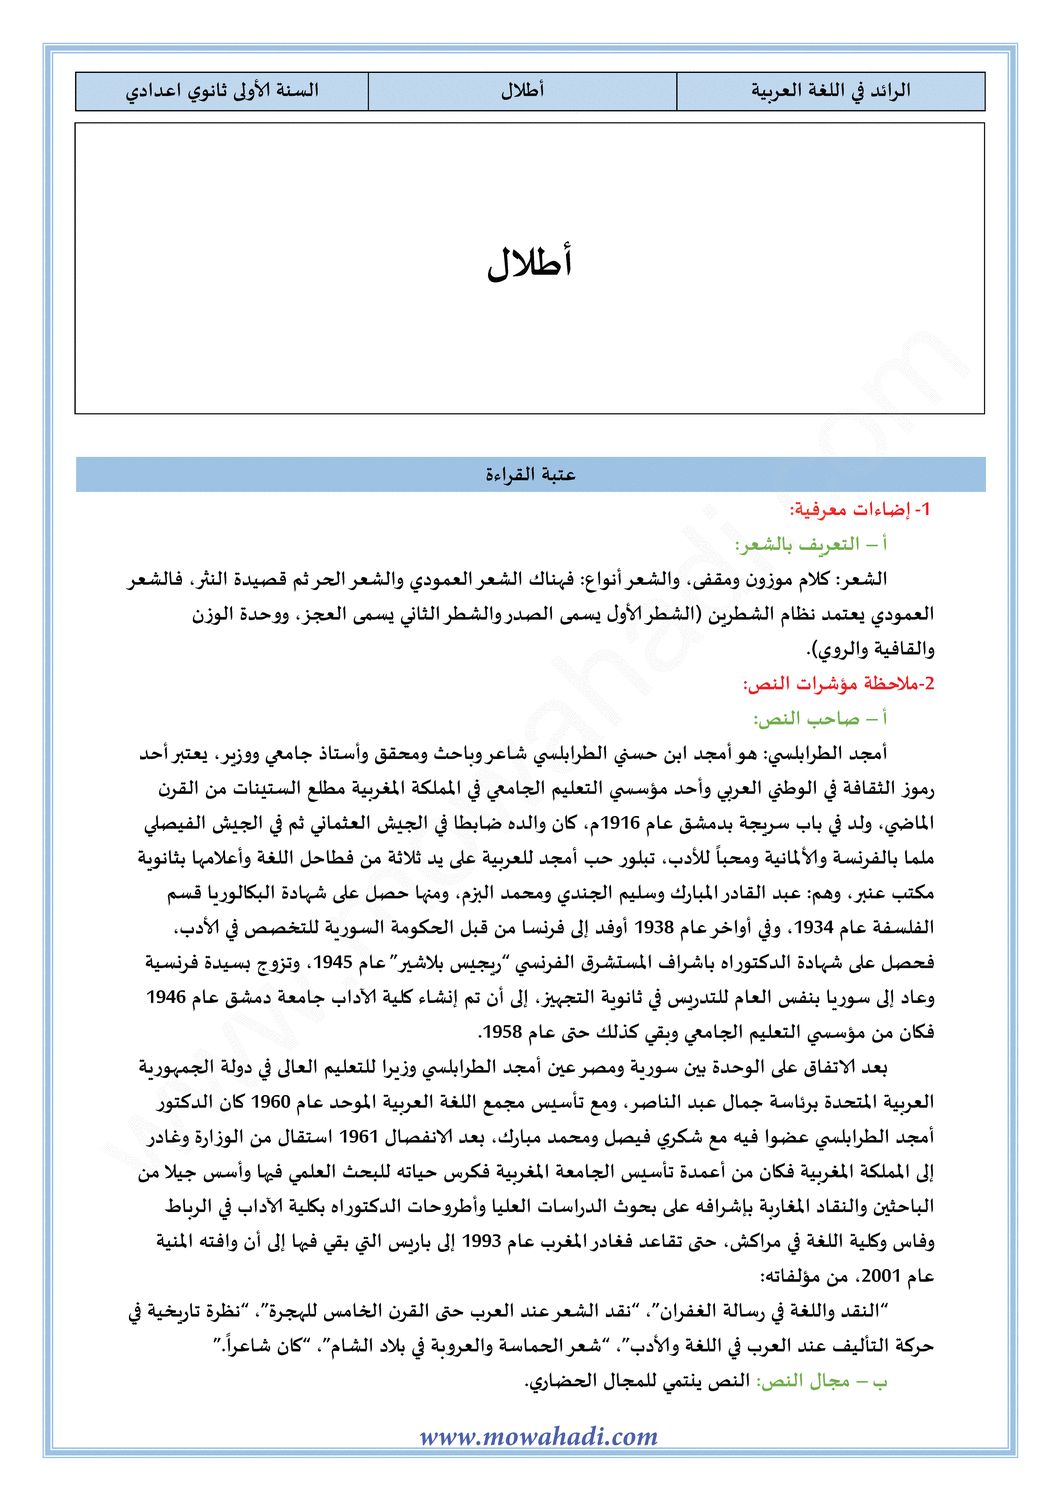 تحضير النص القرائي أطلال للسنة الأولى اعدادي في مادة اللغة العربية